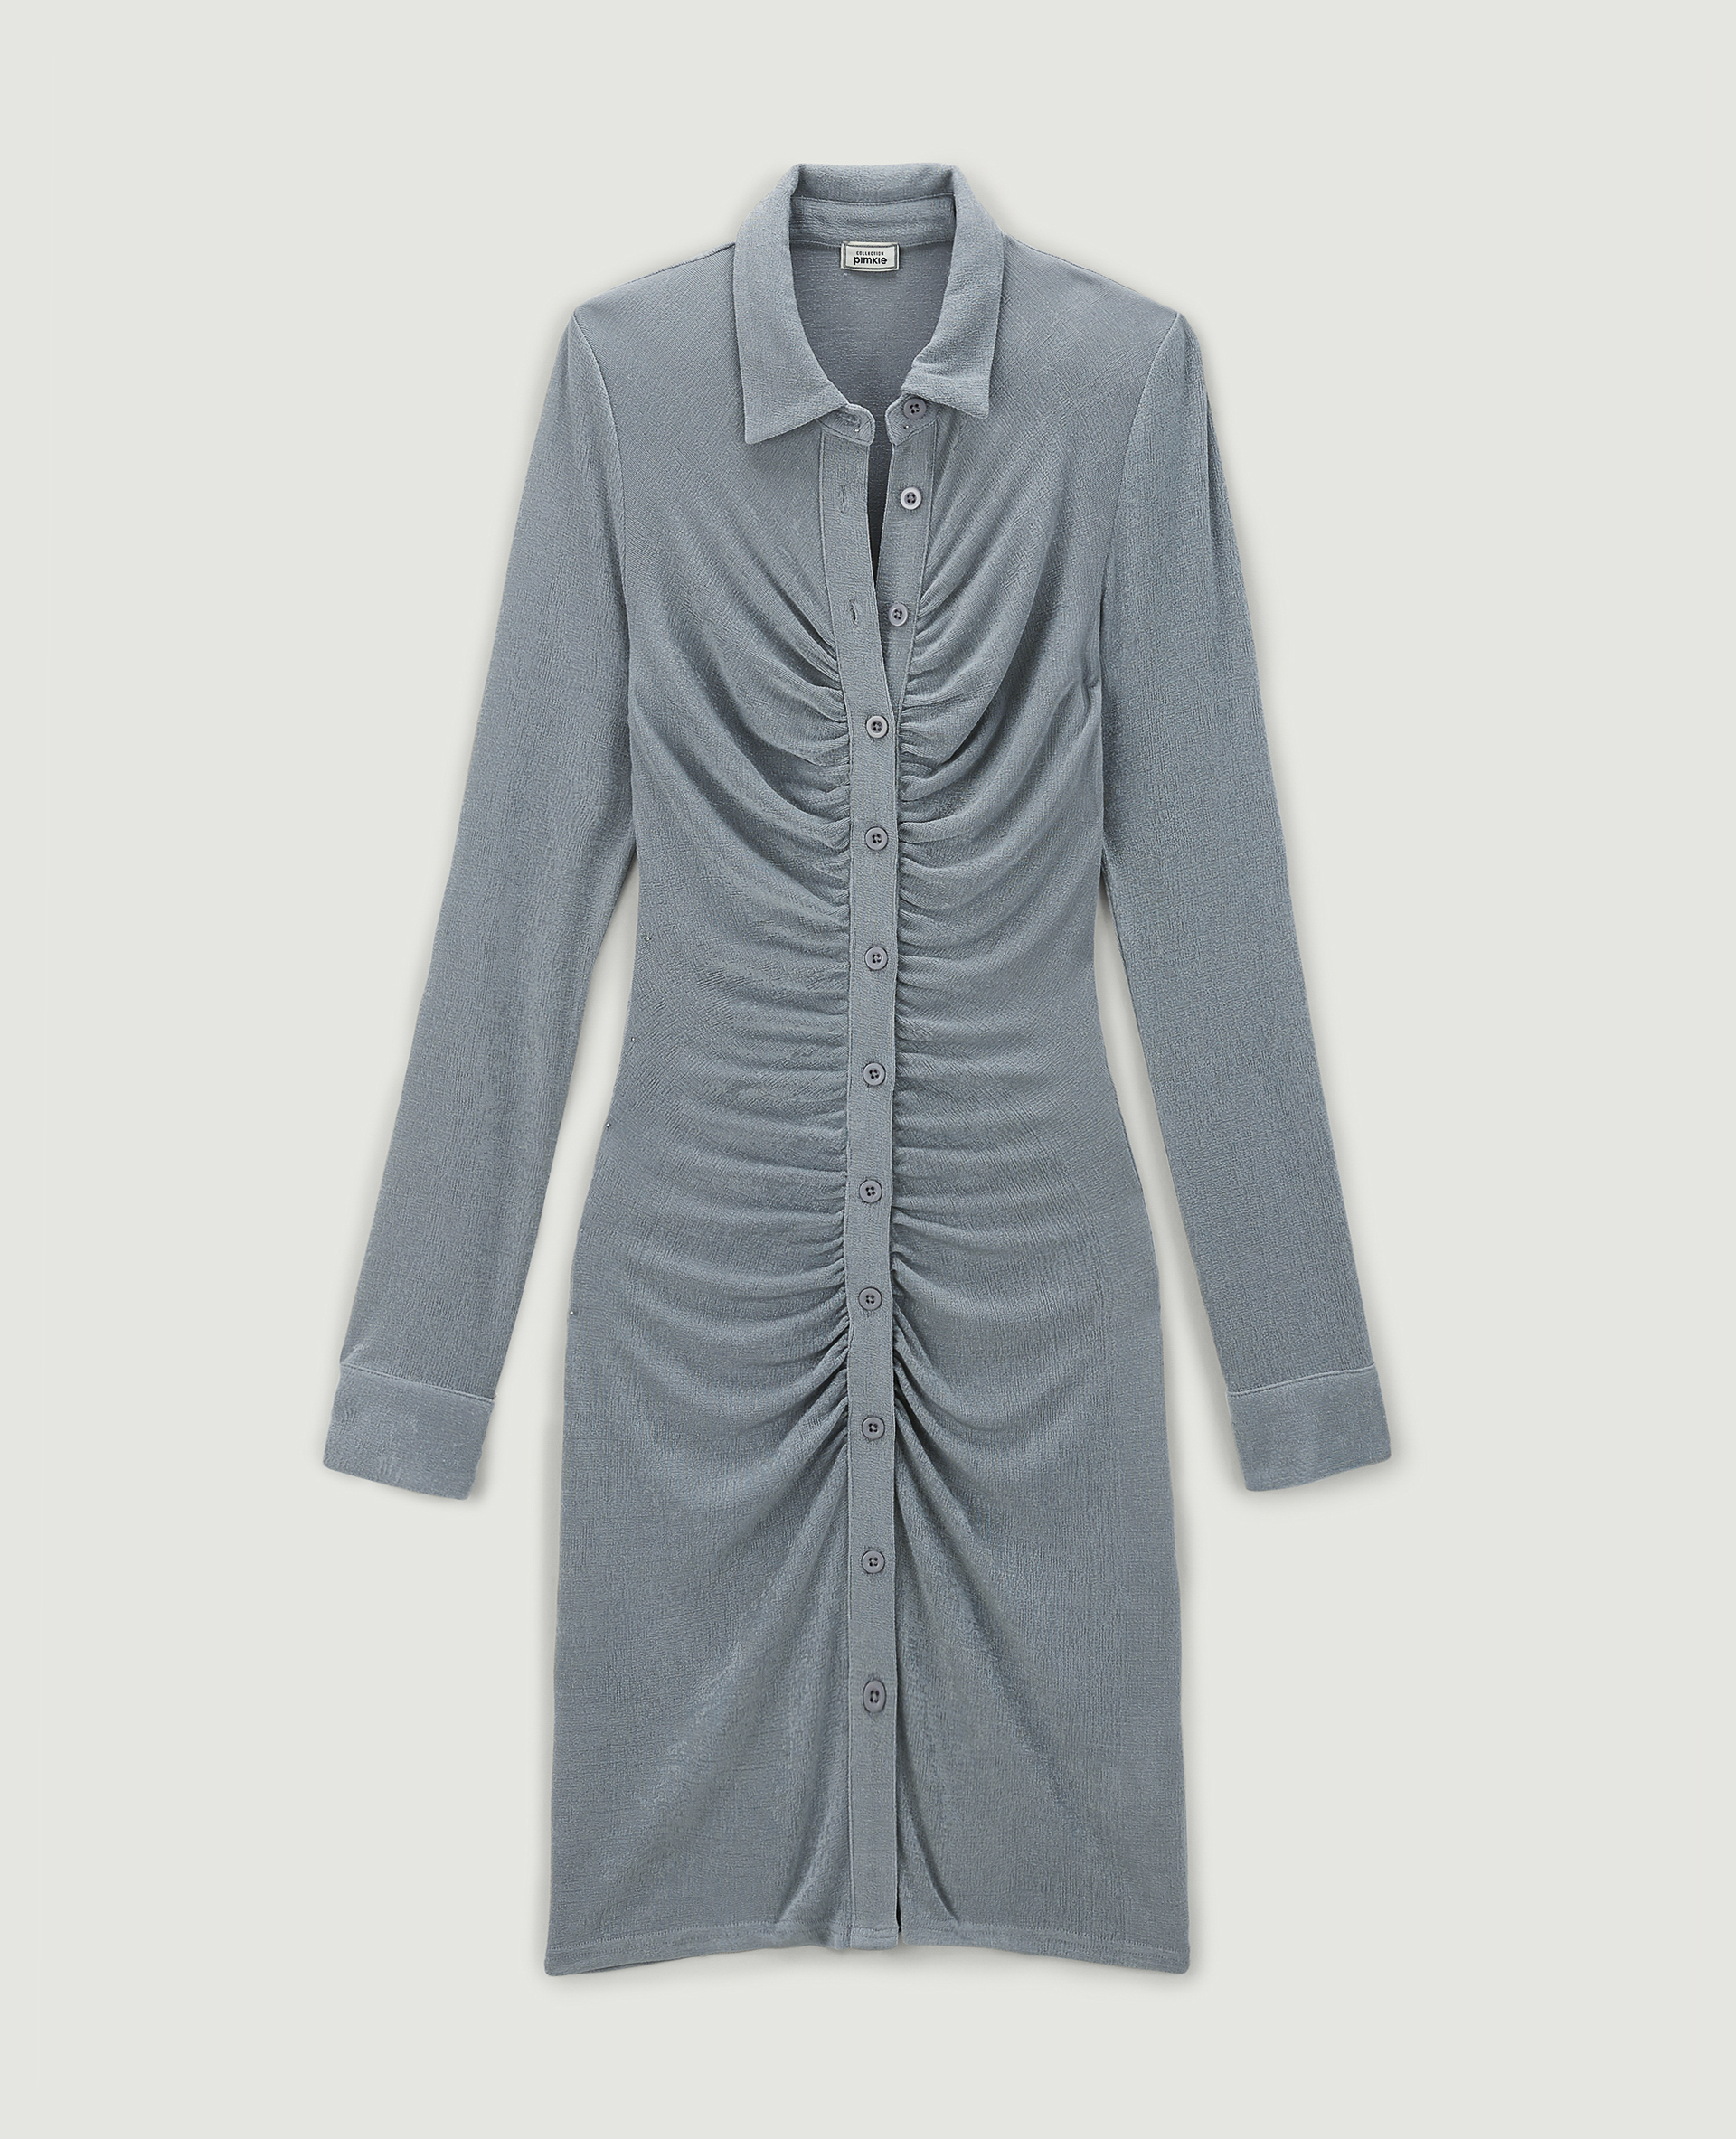 Robe chemise courte effet froncé gris argenté - Pimkie